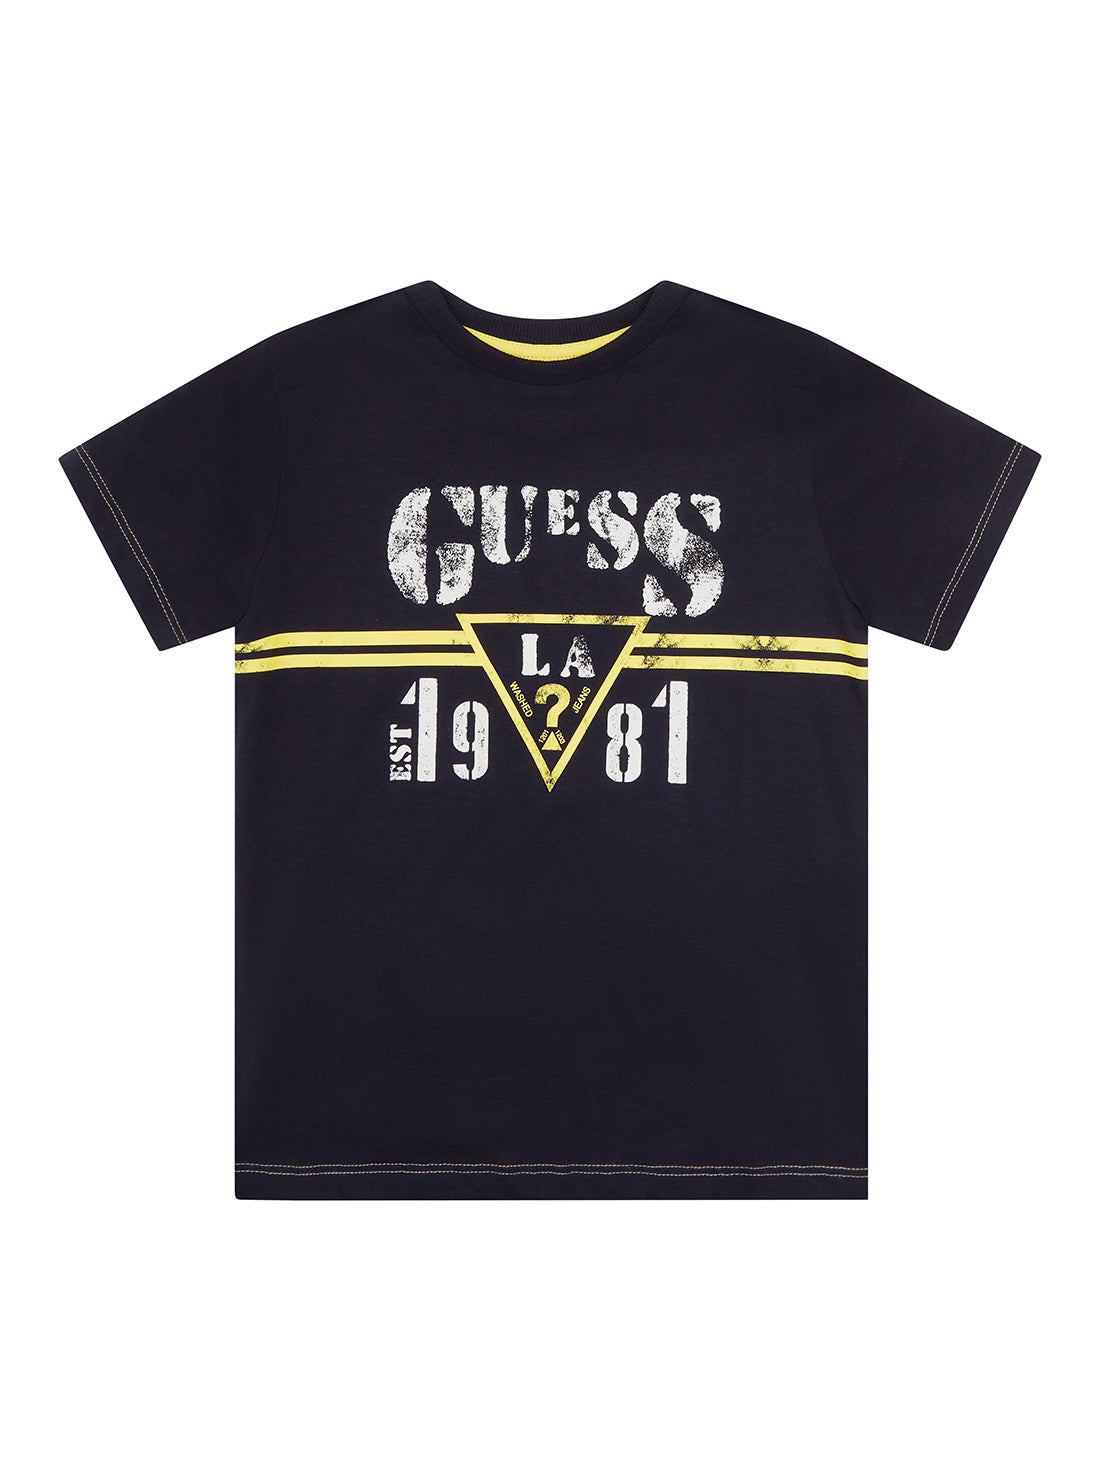 GUESS Little Boys Black LA Logo T-Shirt (2-7) N2RI15K8HM0 Front View